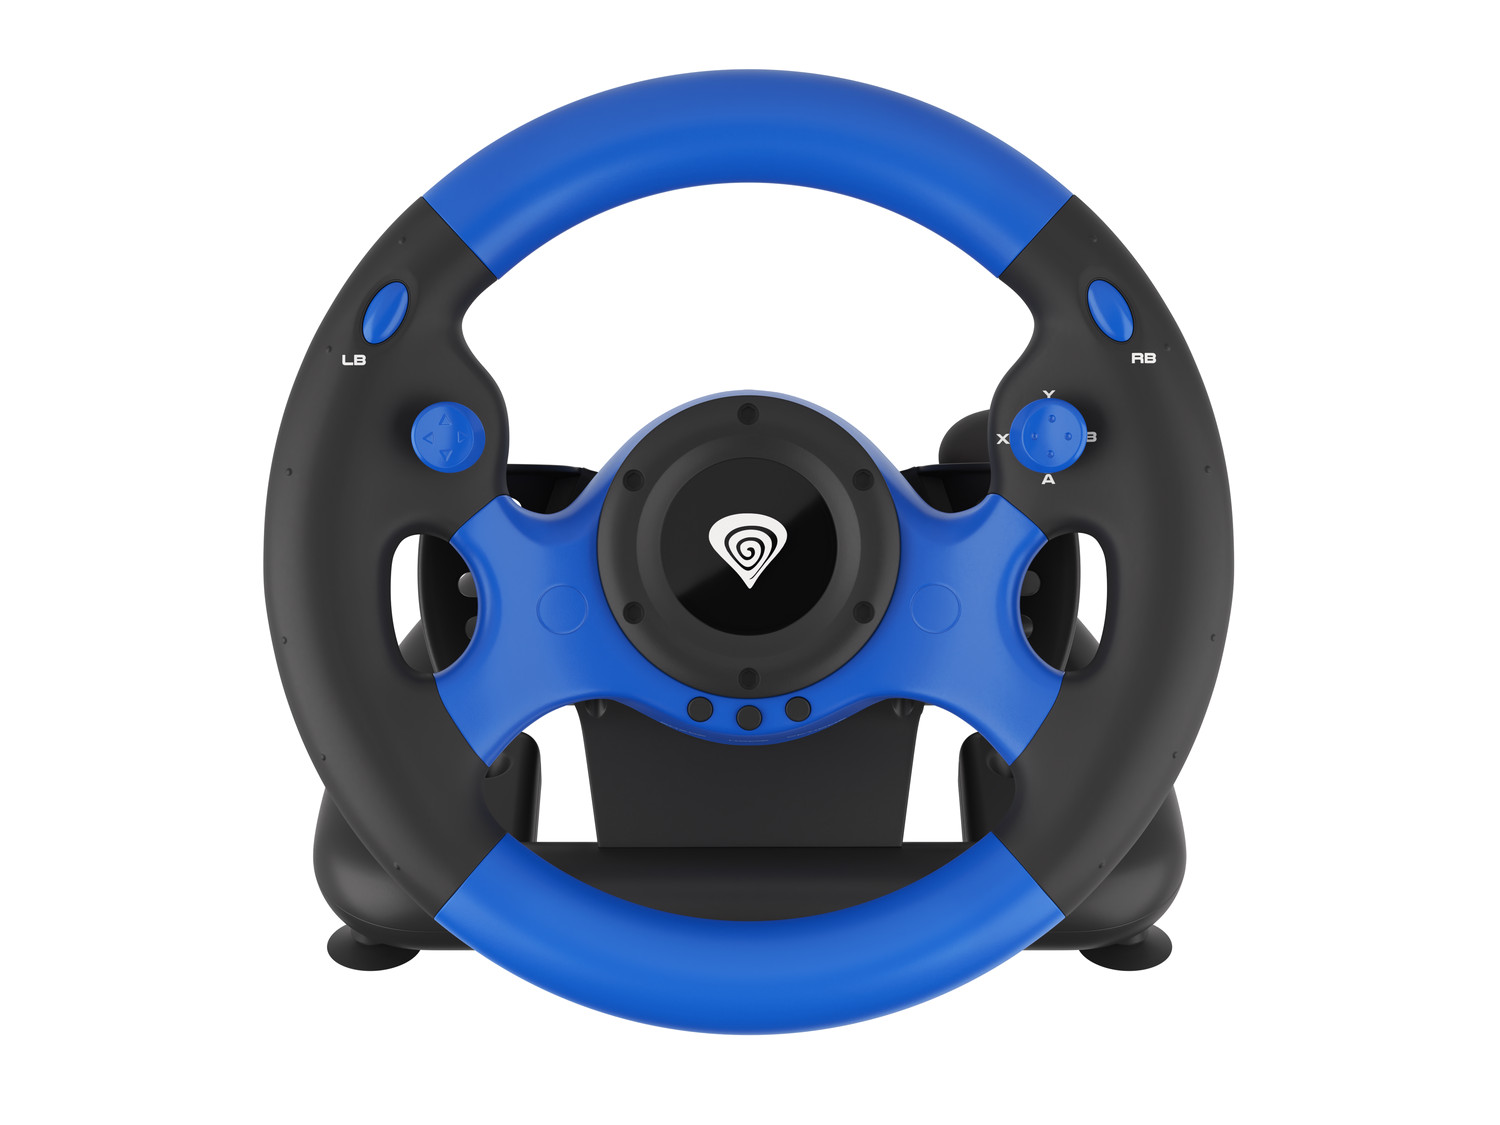 Obrázek Herní volant Genesis Seaborg 350, multiplatformní pro PC, PS4, PS3,  Xbox One, Xbox 360, Nintendo Switch